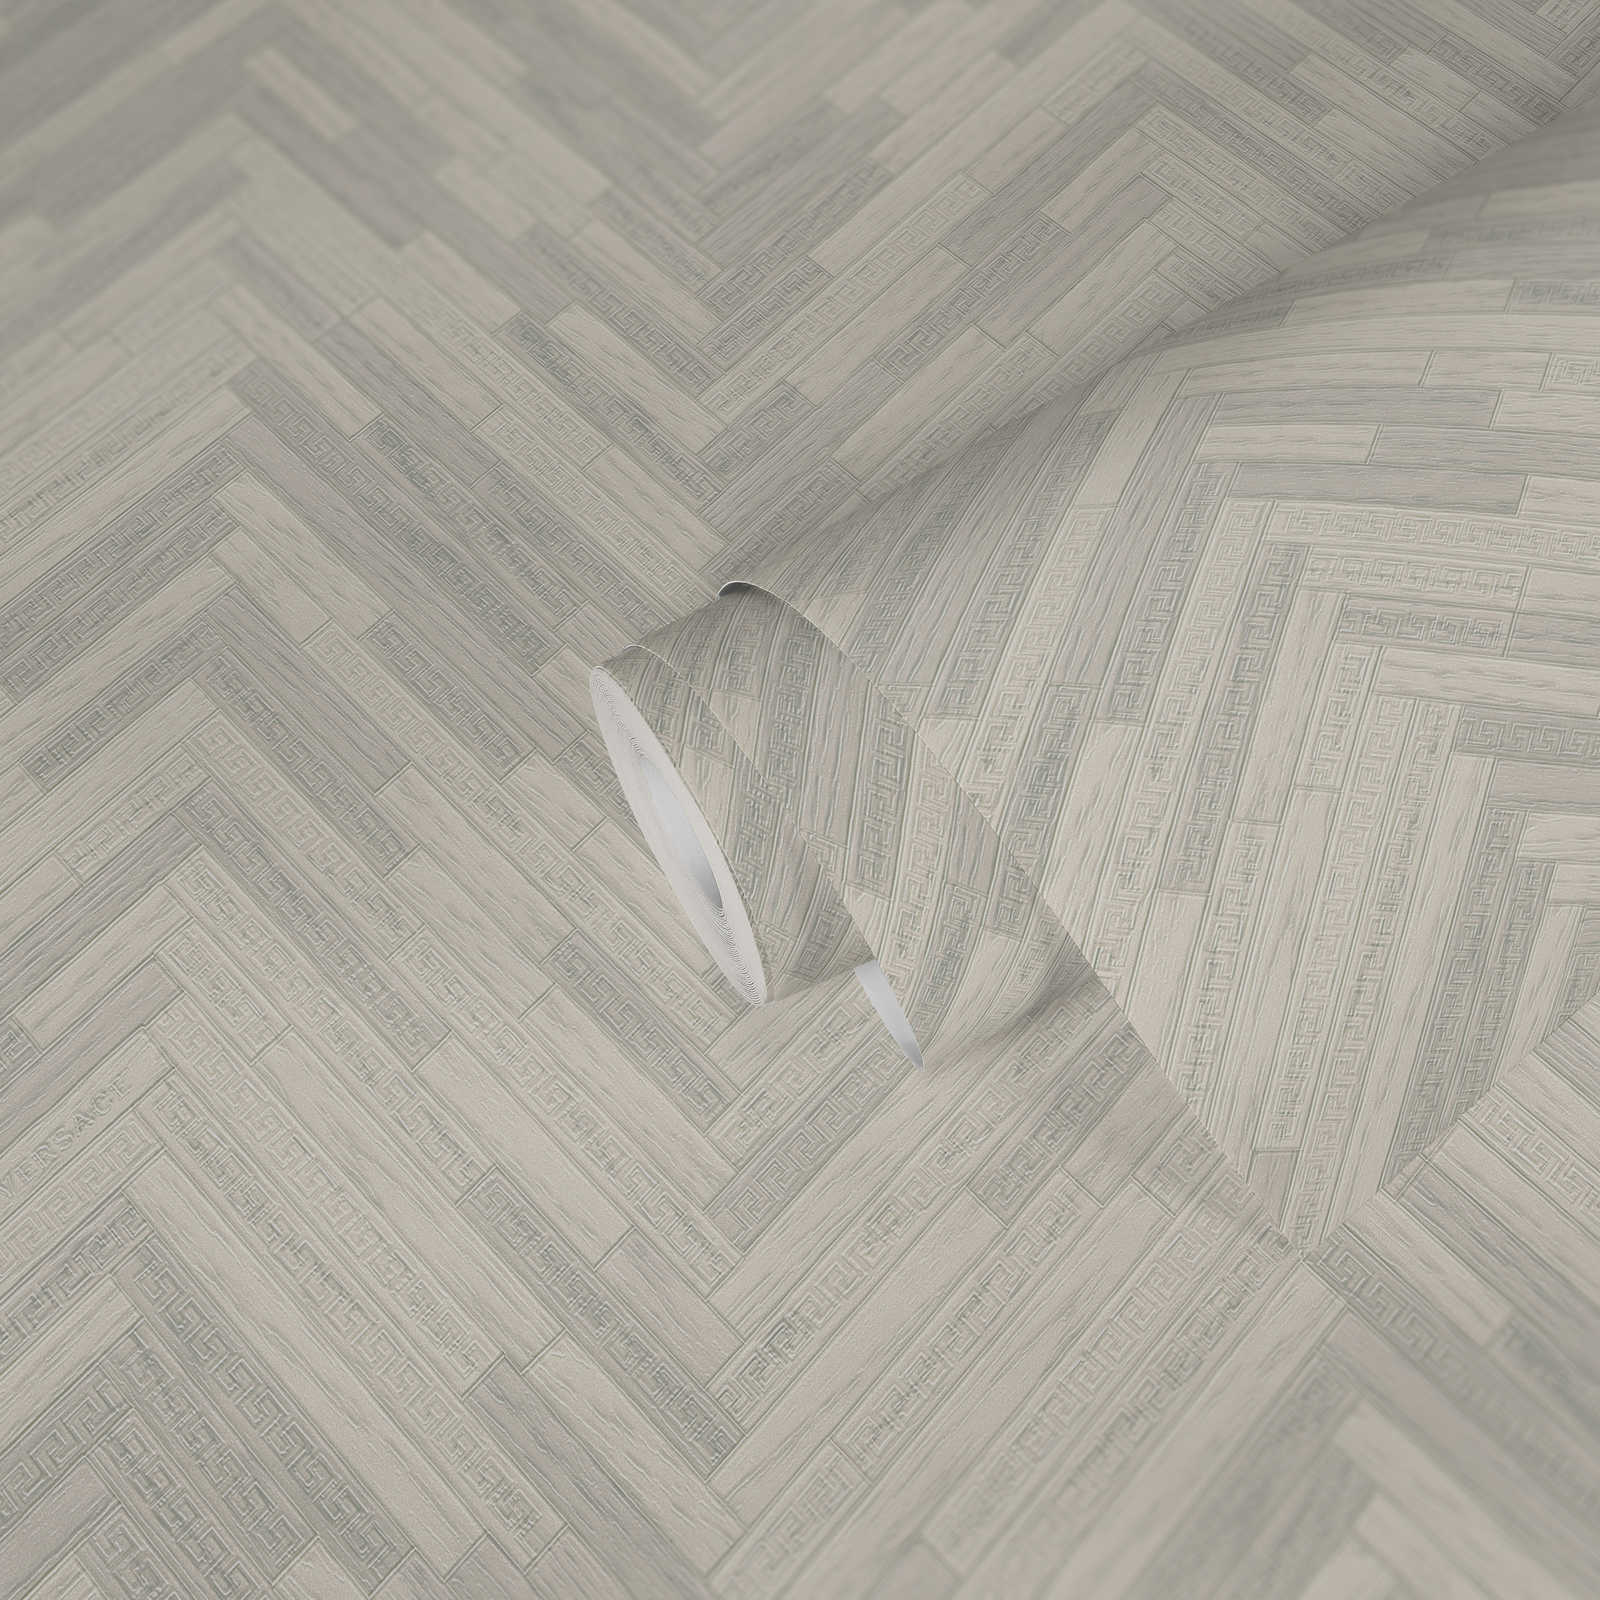             VERSACE Home Papier peint aspect bois élégant - gris, blanc
        